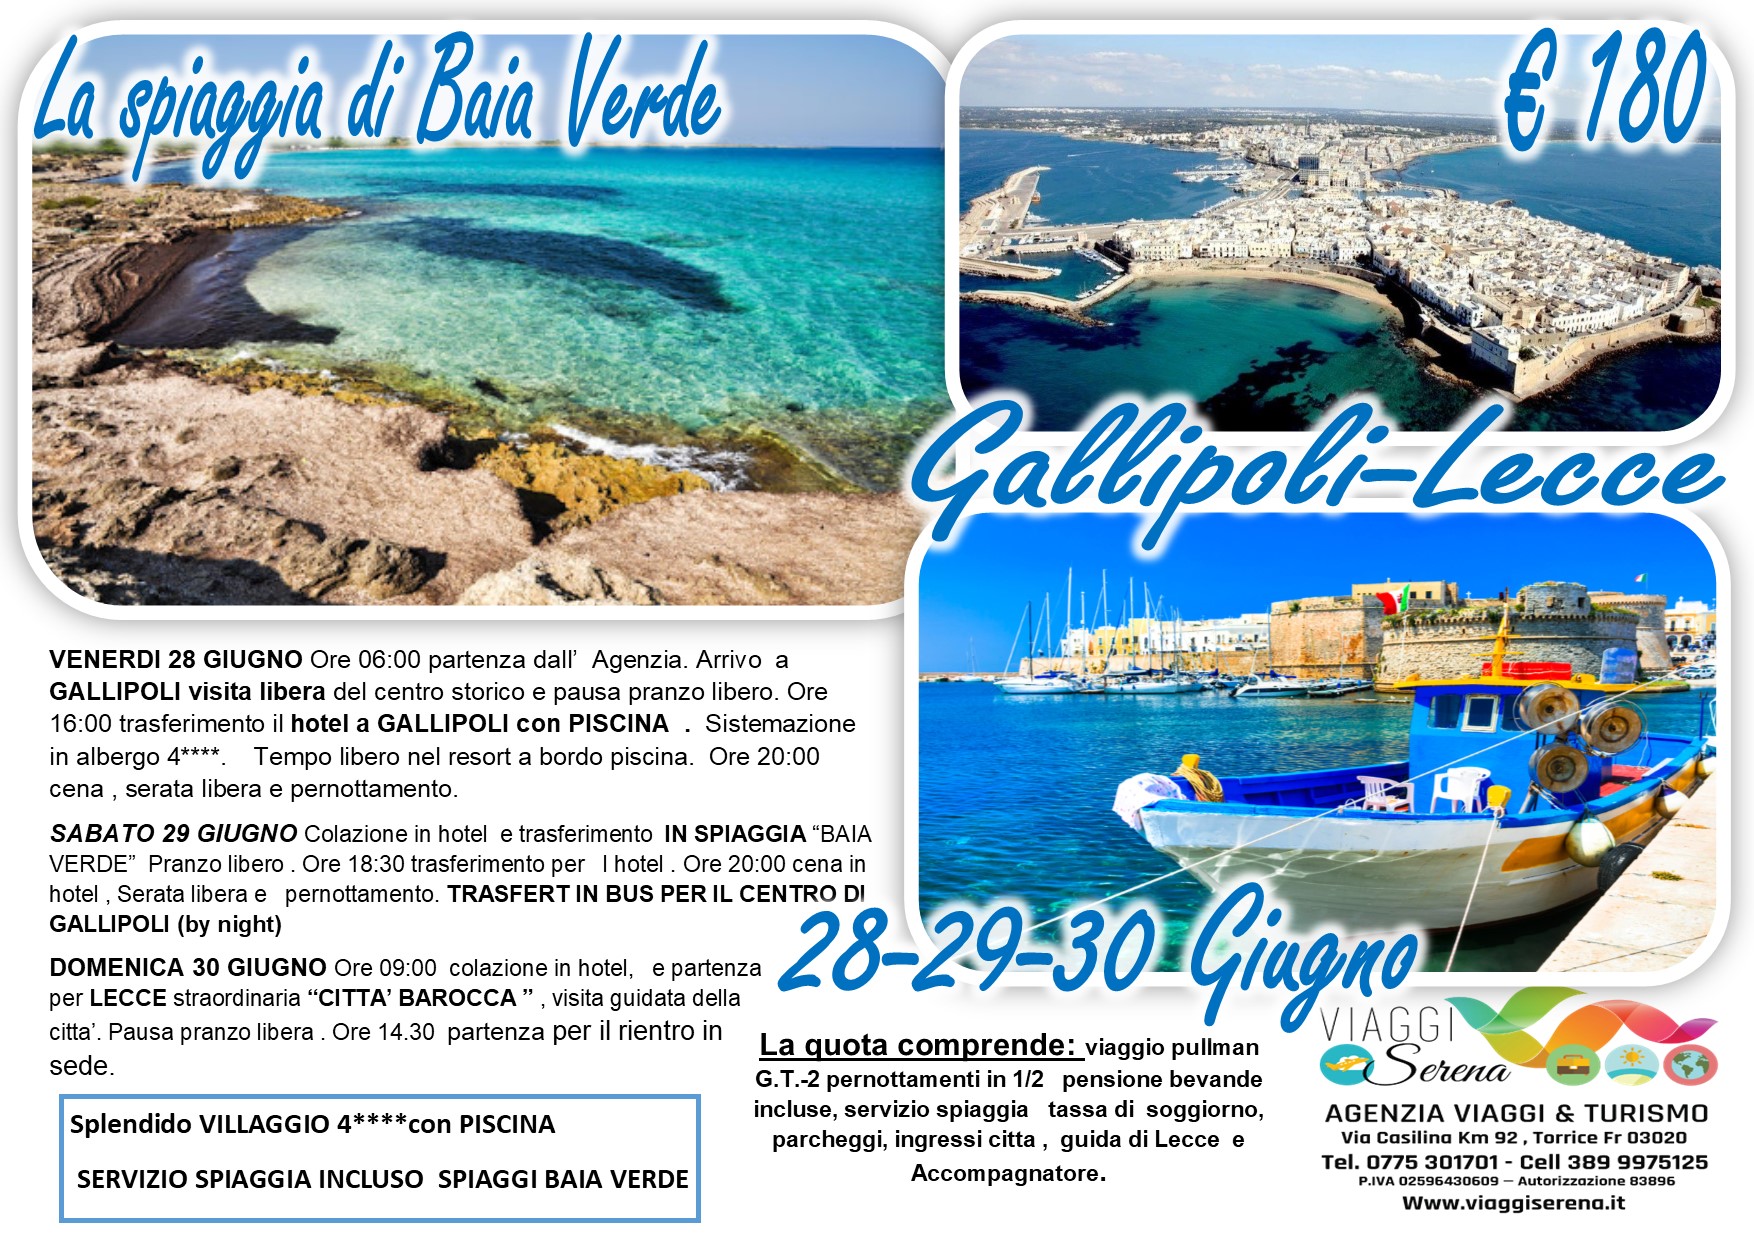 Viaggi di gruppo: Gallipoli, Lecce e Spiaggia di Baia Verde 28-29-30 Giugno €180,00